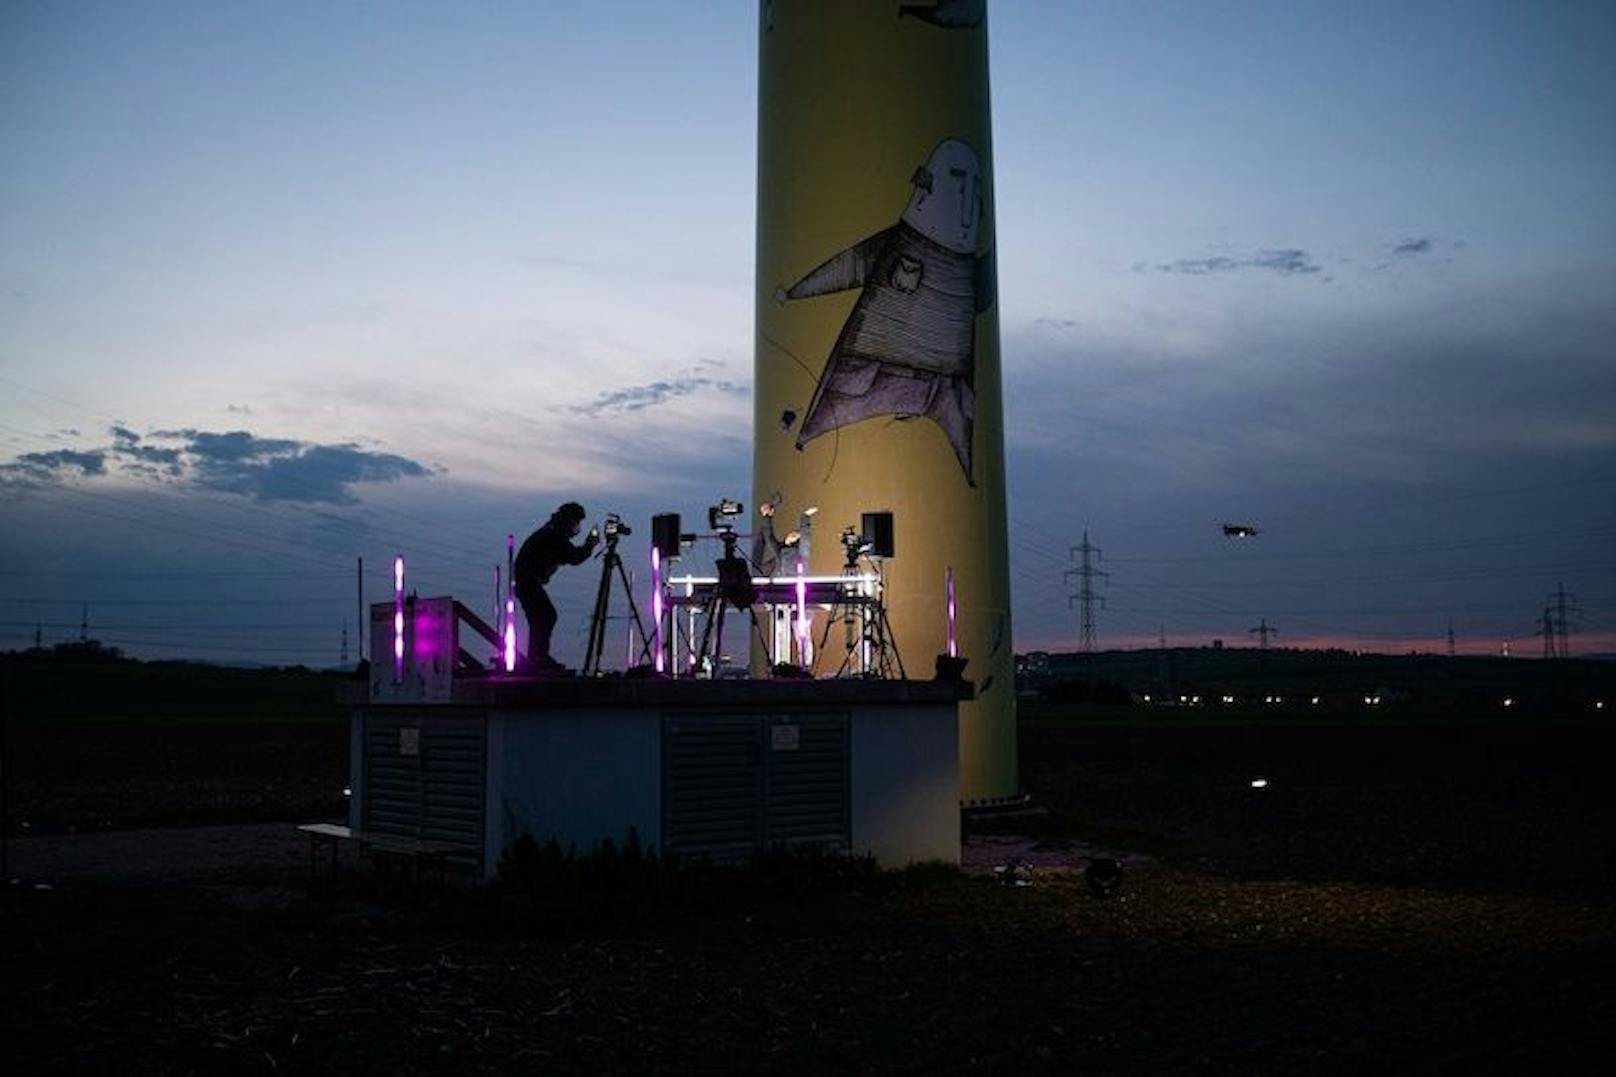 Am Freitag, 30. April, geht das weltweit erste Windrad Festival über die Online-Bühne. Bei laufendem Betrieb: Das heißt, die aus dem Wind gewonnene Energie fließt direkt in die Mischpulte der DJs.